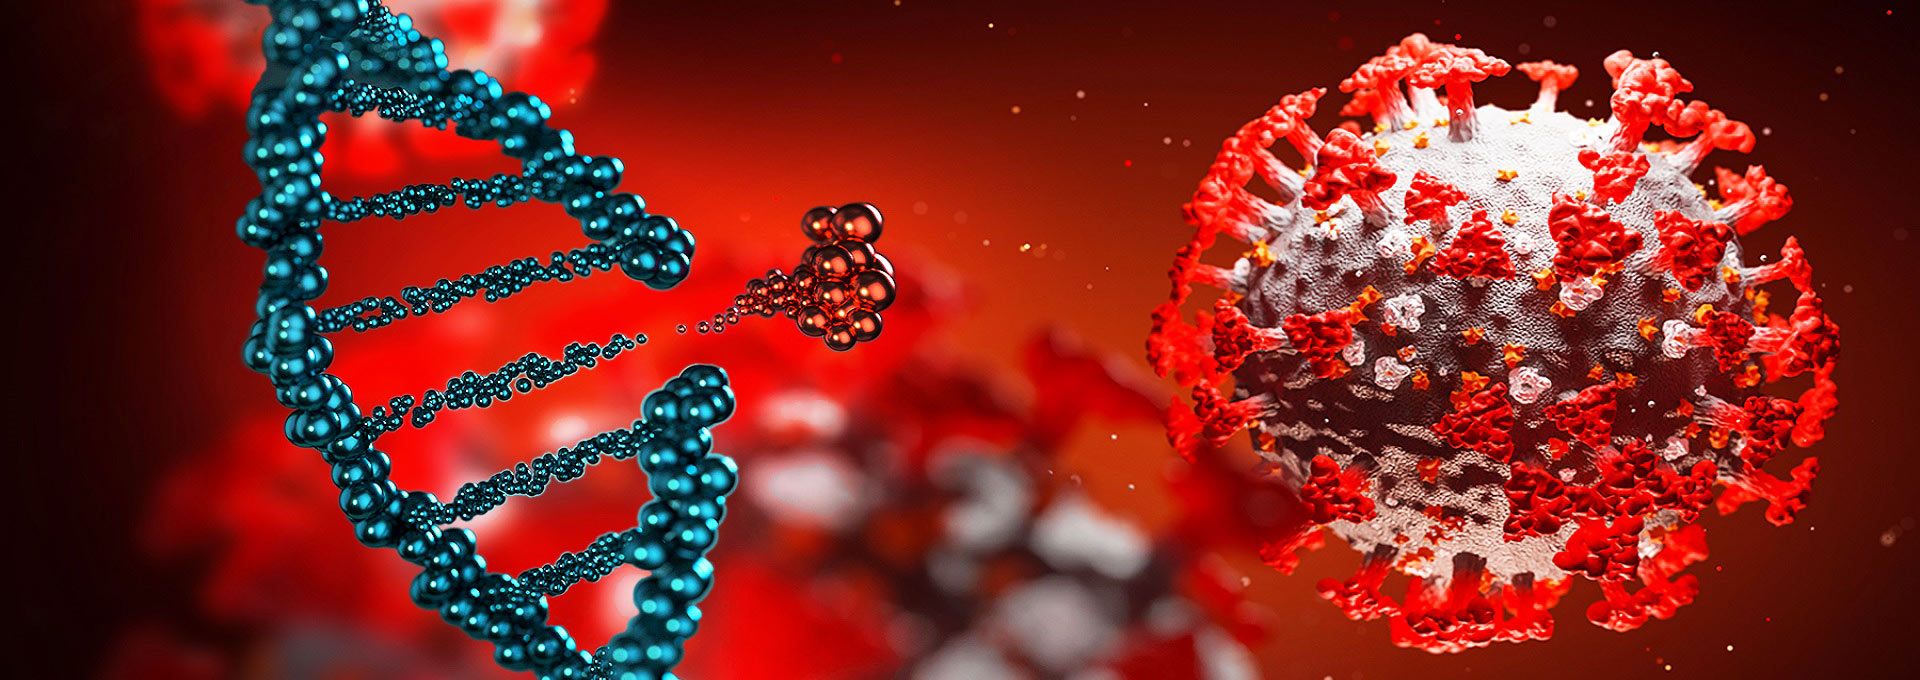 audiodescrição: ilustração do vírus Sars-Cov-2, o novo coronavírus, e de uma tira de material genético